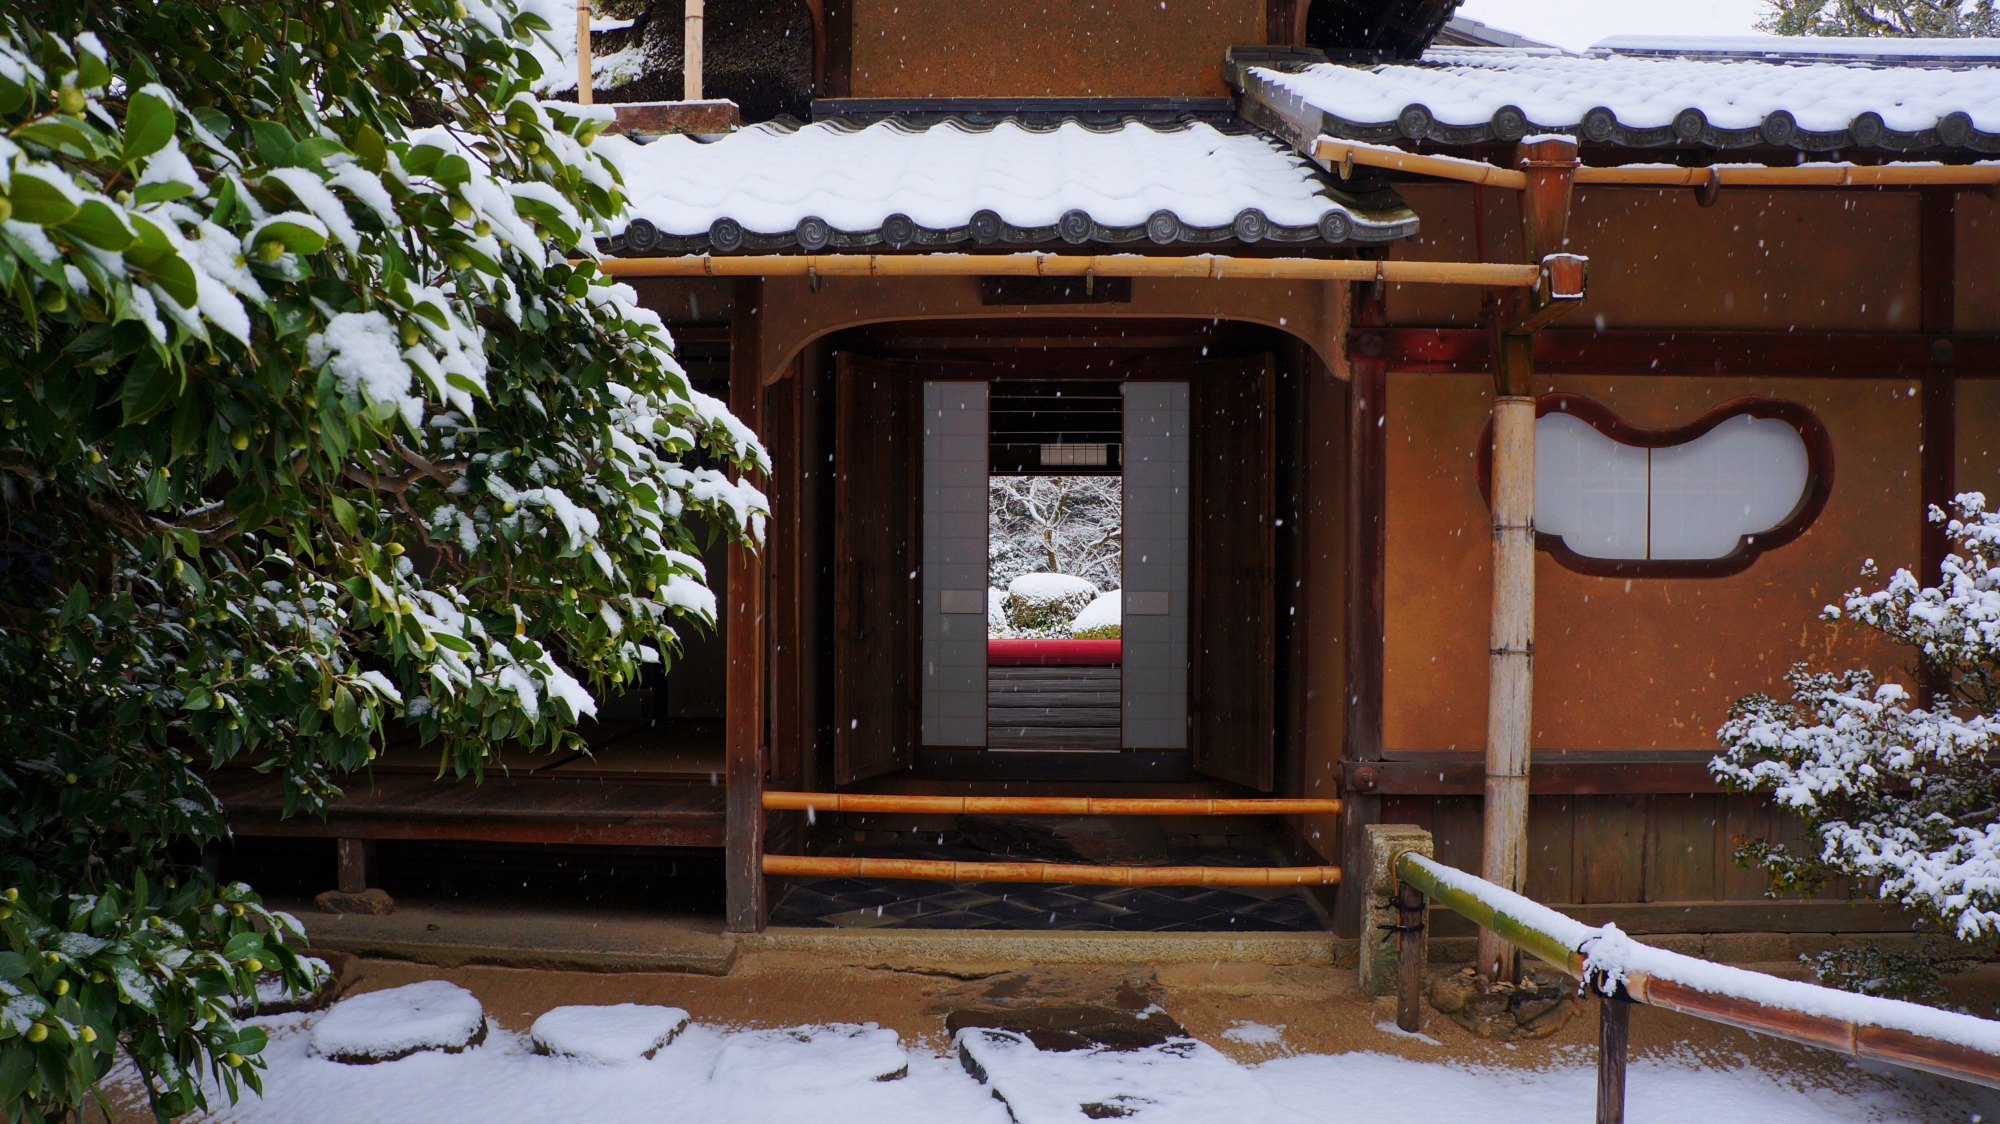 詩仙堂の玄関から見える雪化粧した庭園